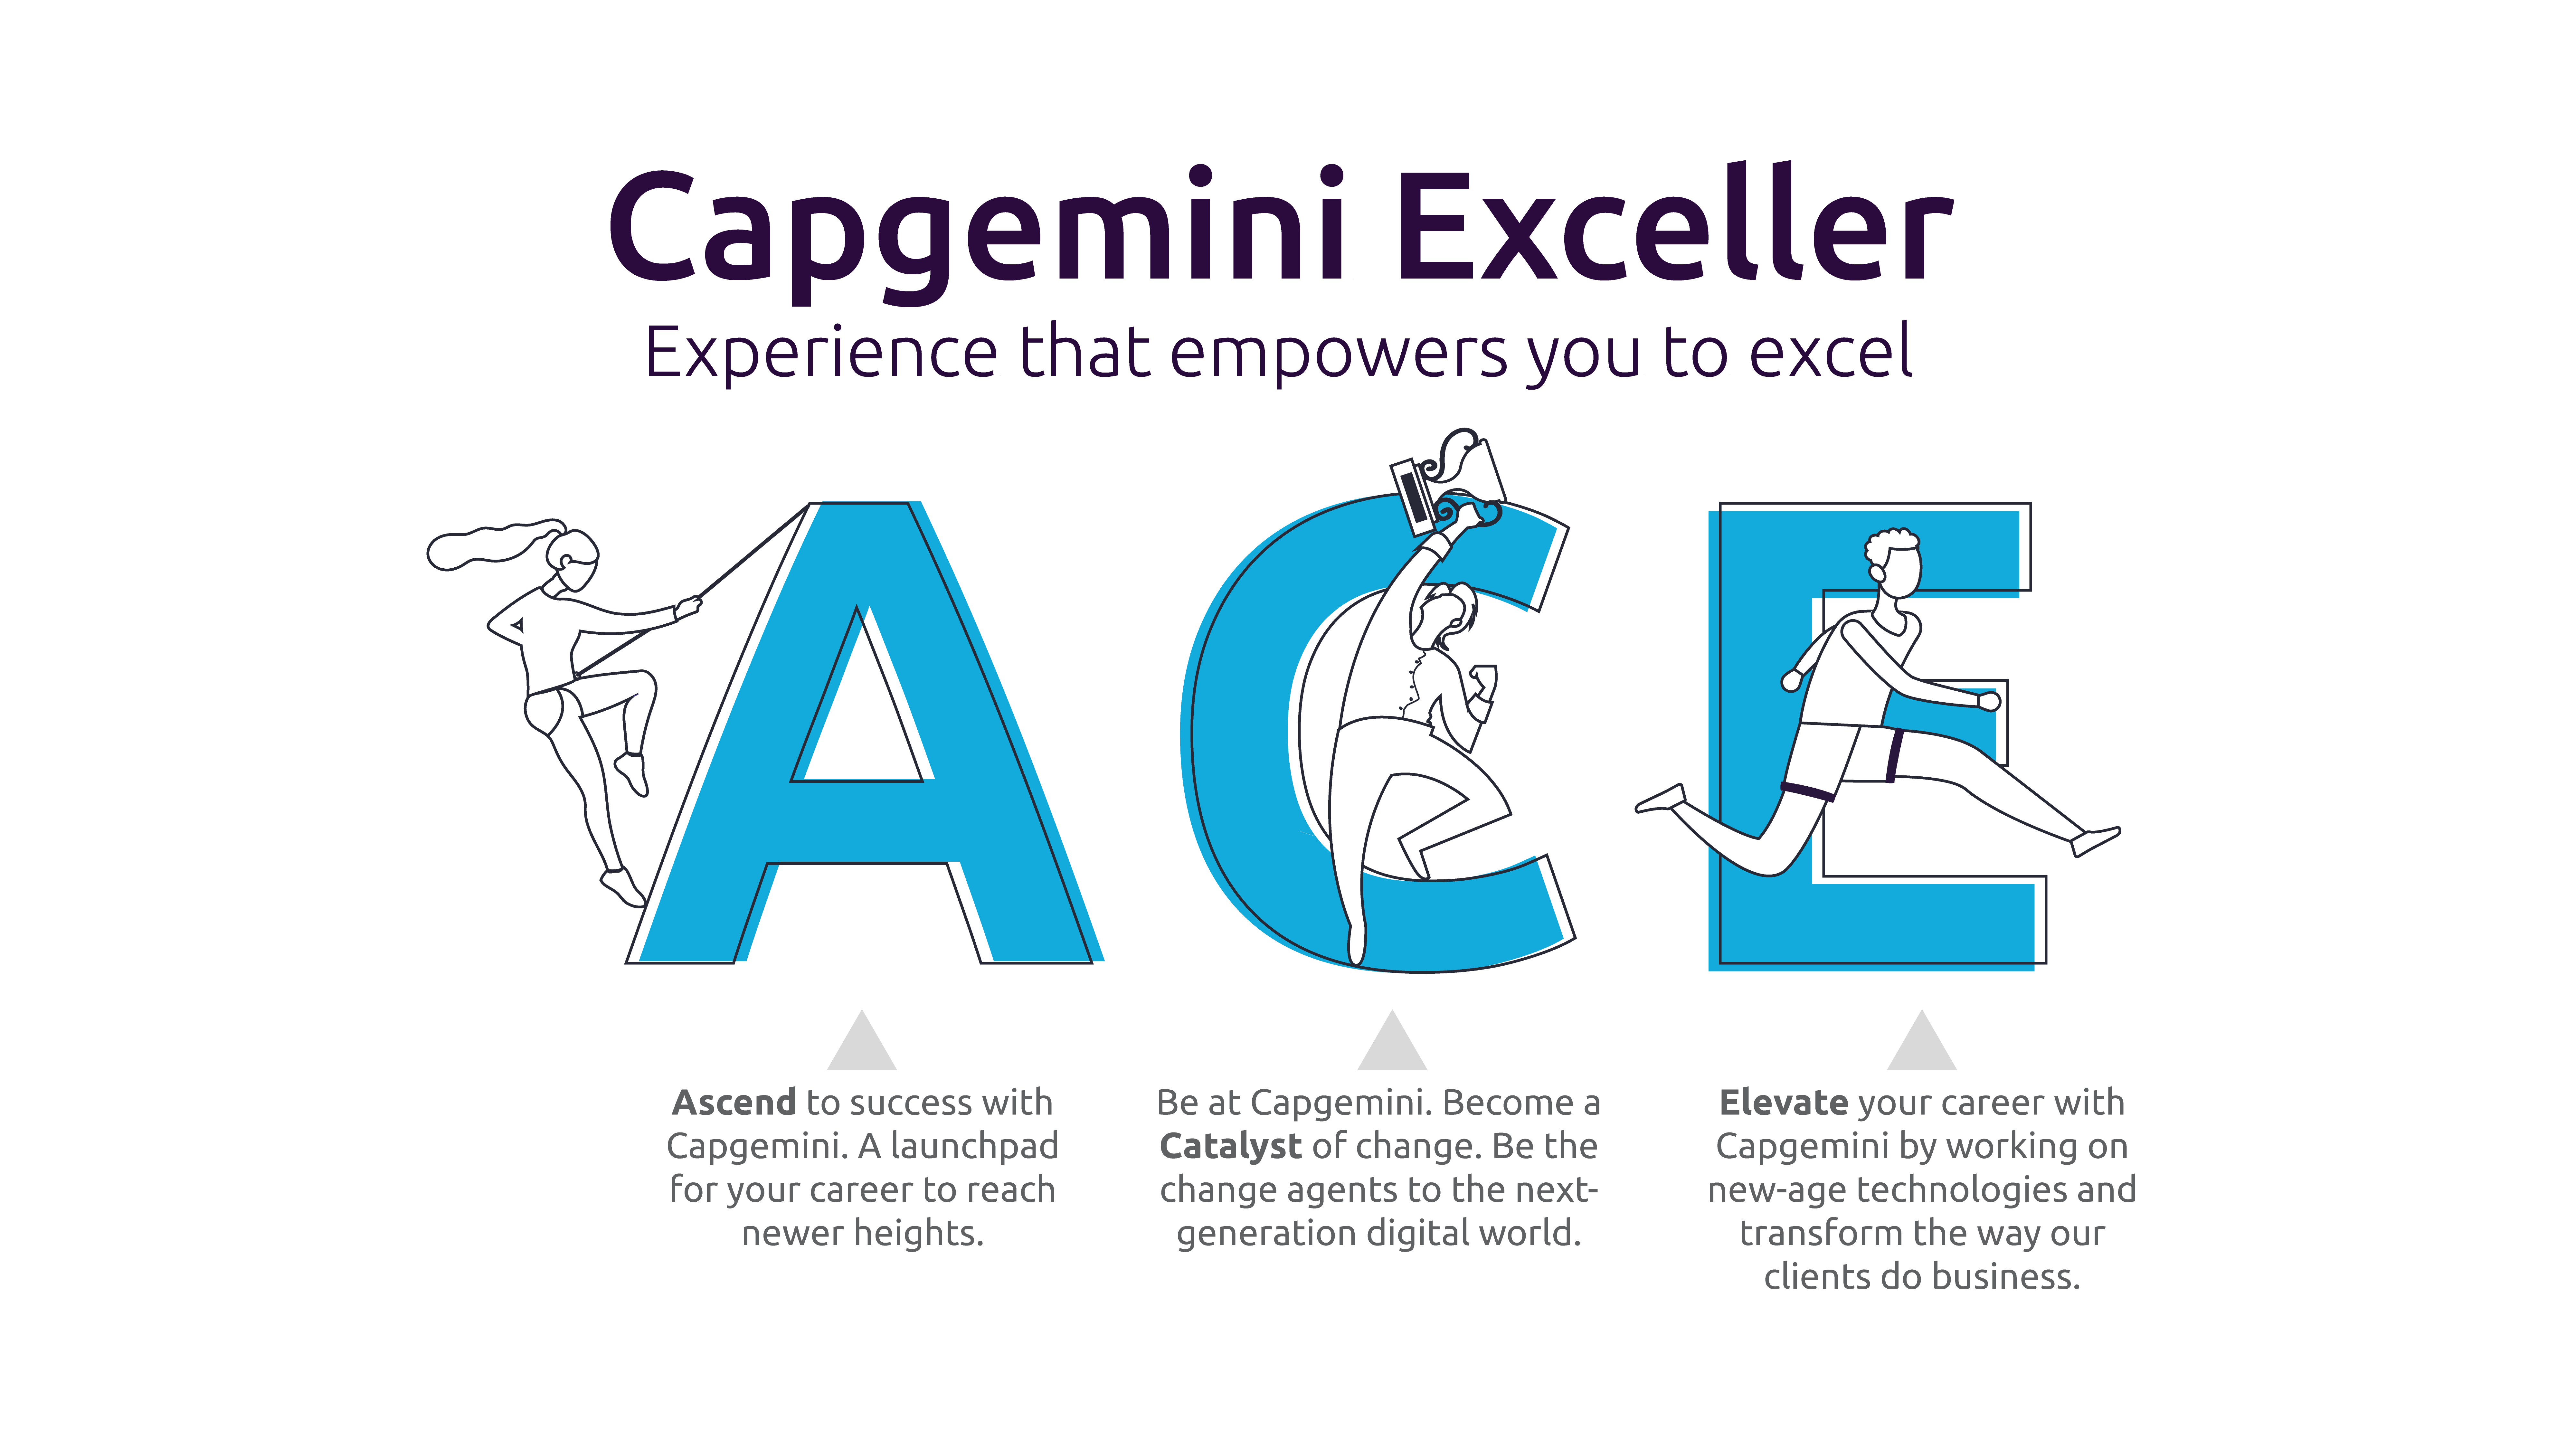 ACE - Capgemini Exceller